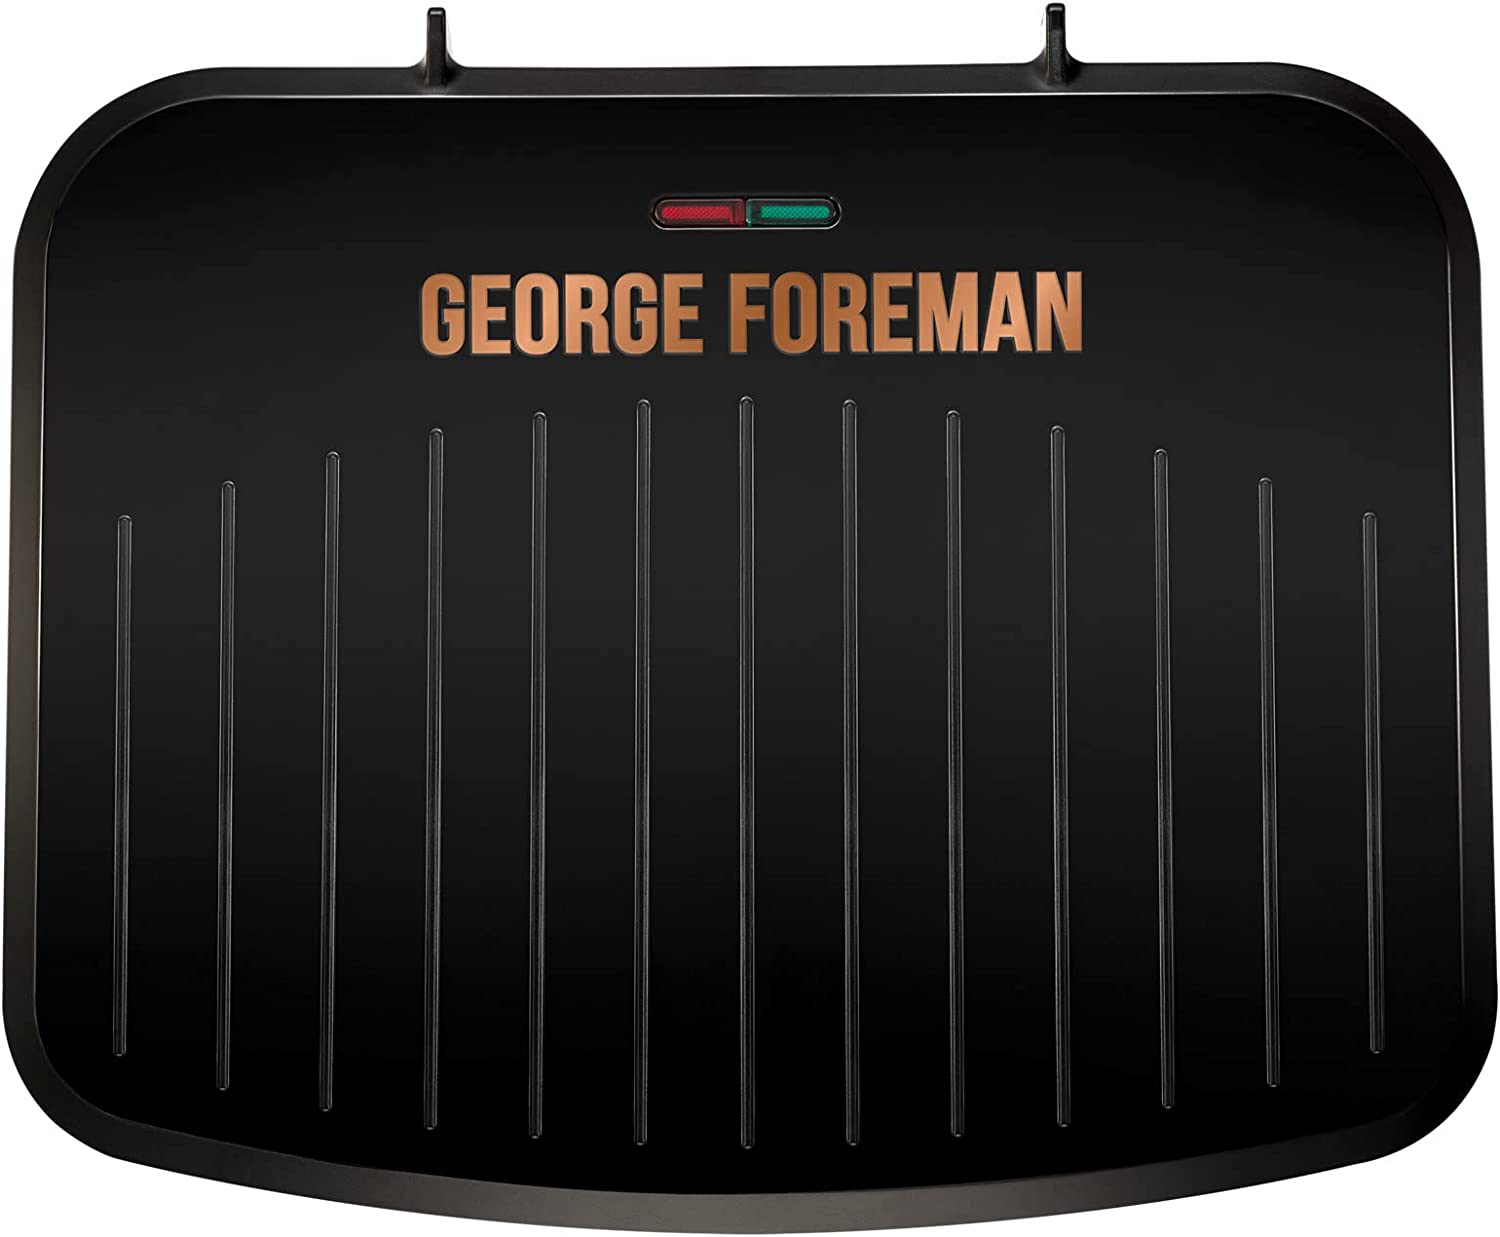 George Foreman Electric Indoor Medium Fit Grill - Versatile Griddle, Hot Plate شواية GEORGE FOREMAN الكهربائية بمقاس متوسط - شبكة متعددة الاستخدامات